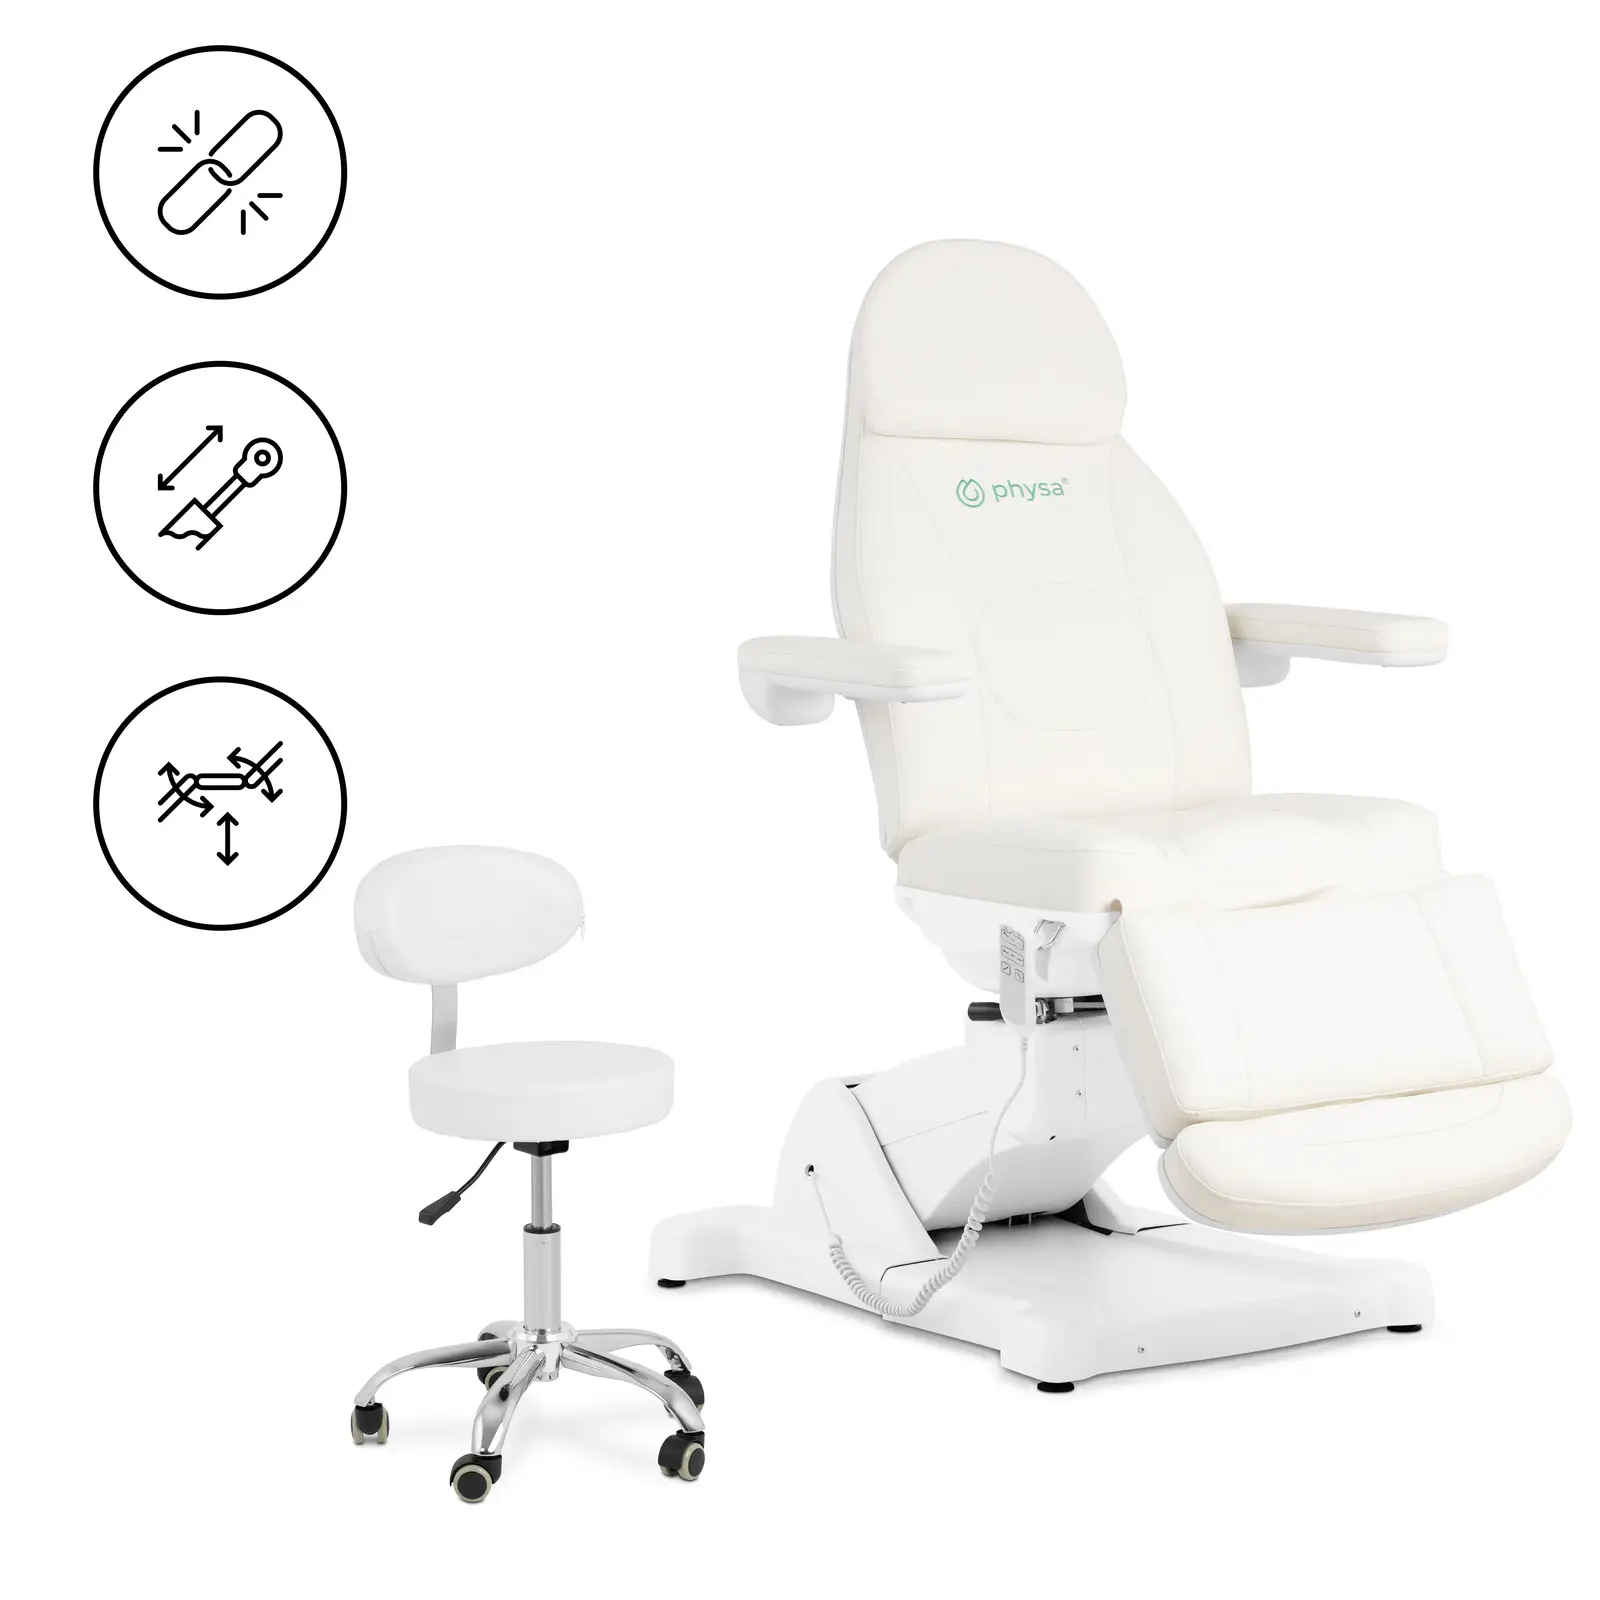 Fotel kosmetyczny + krzesło kosmetyczne - 350 W - 150 kg każdy - biały